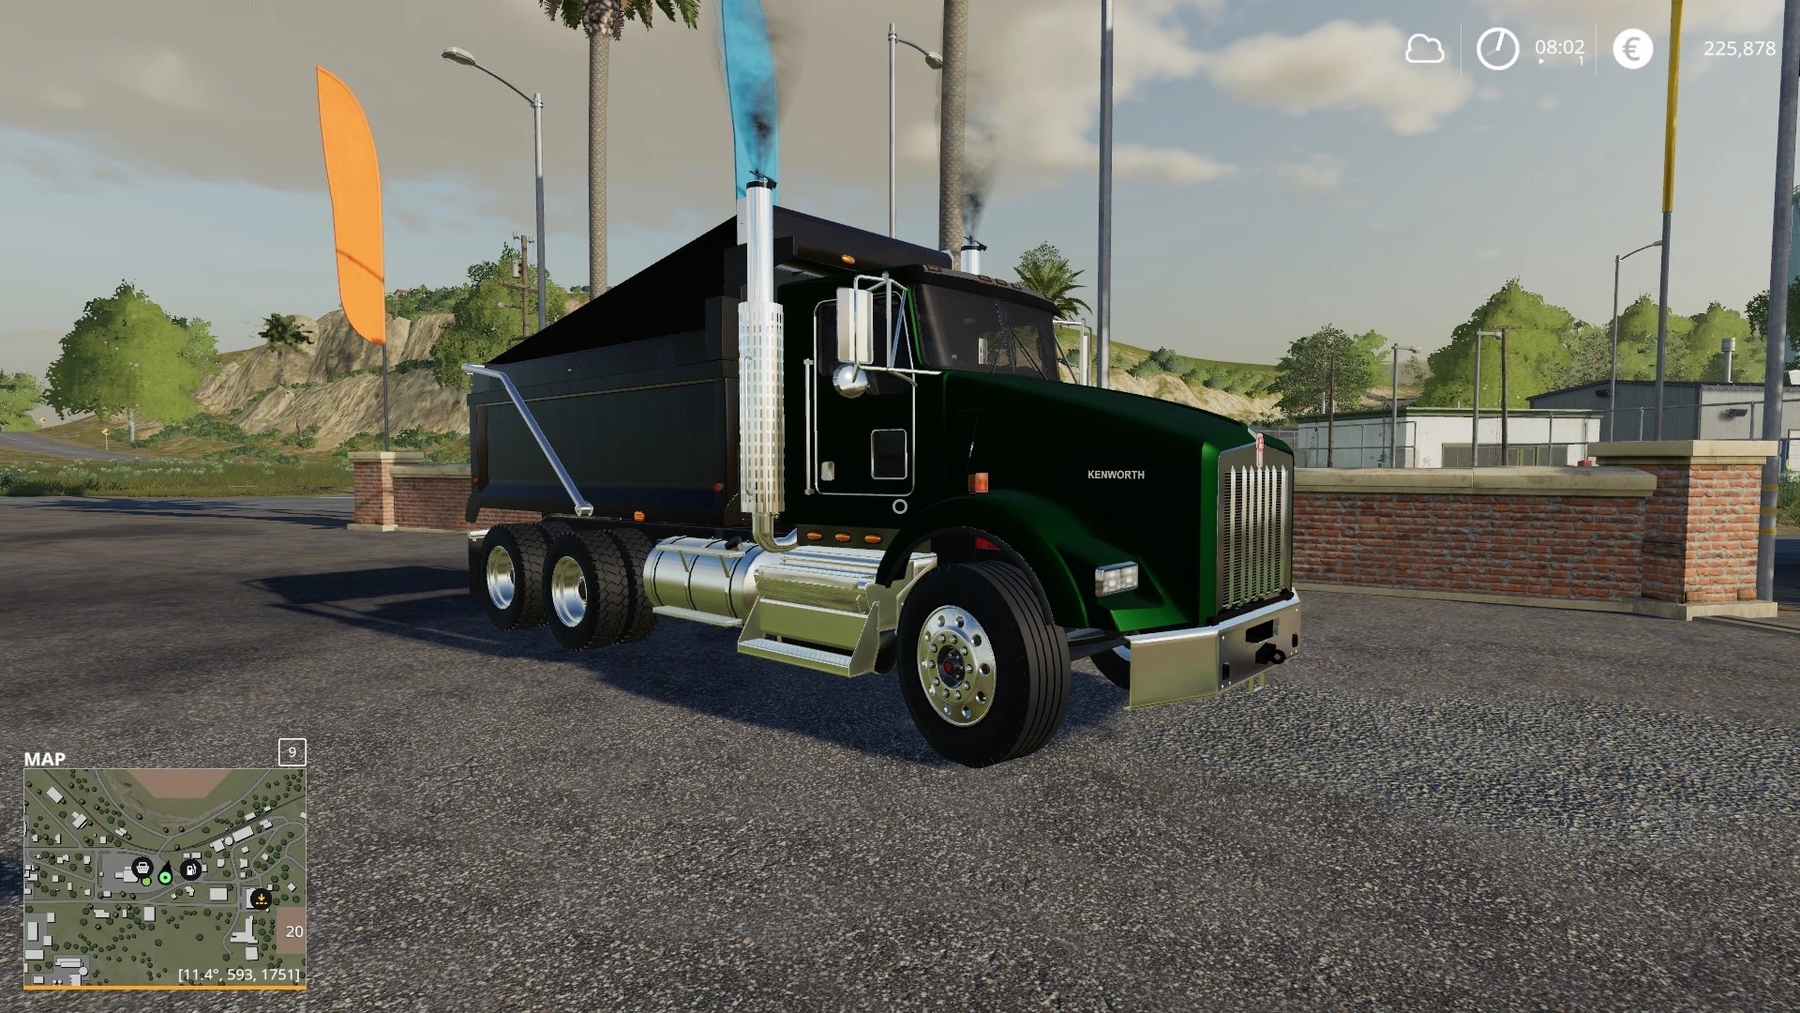 Kenworth T800 V11 Fs 19 Trucks Farming Simulator 2019 Mods Images And Photos Finder 4037